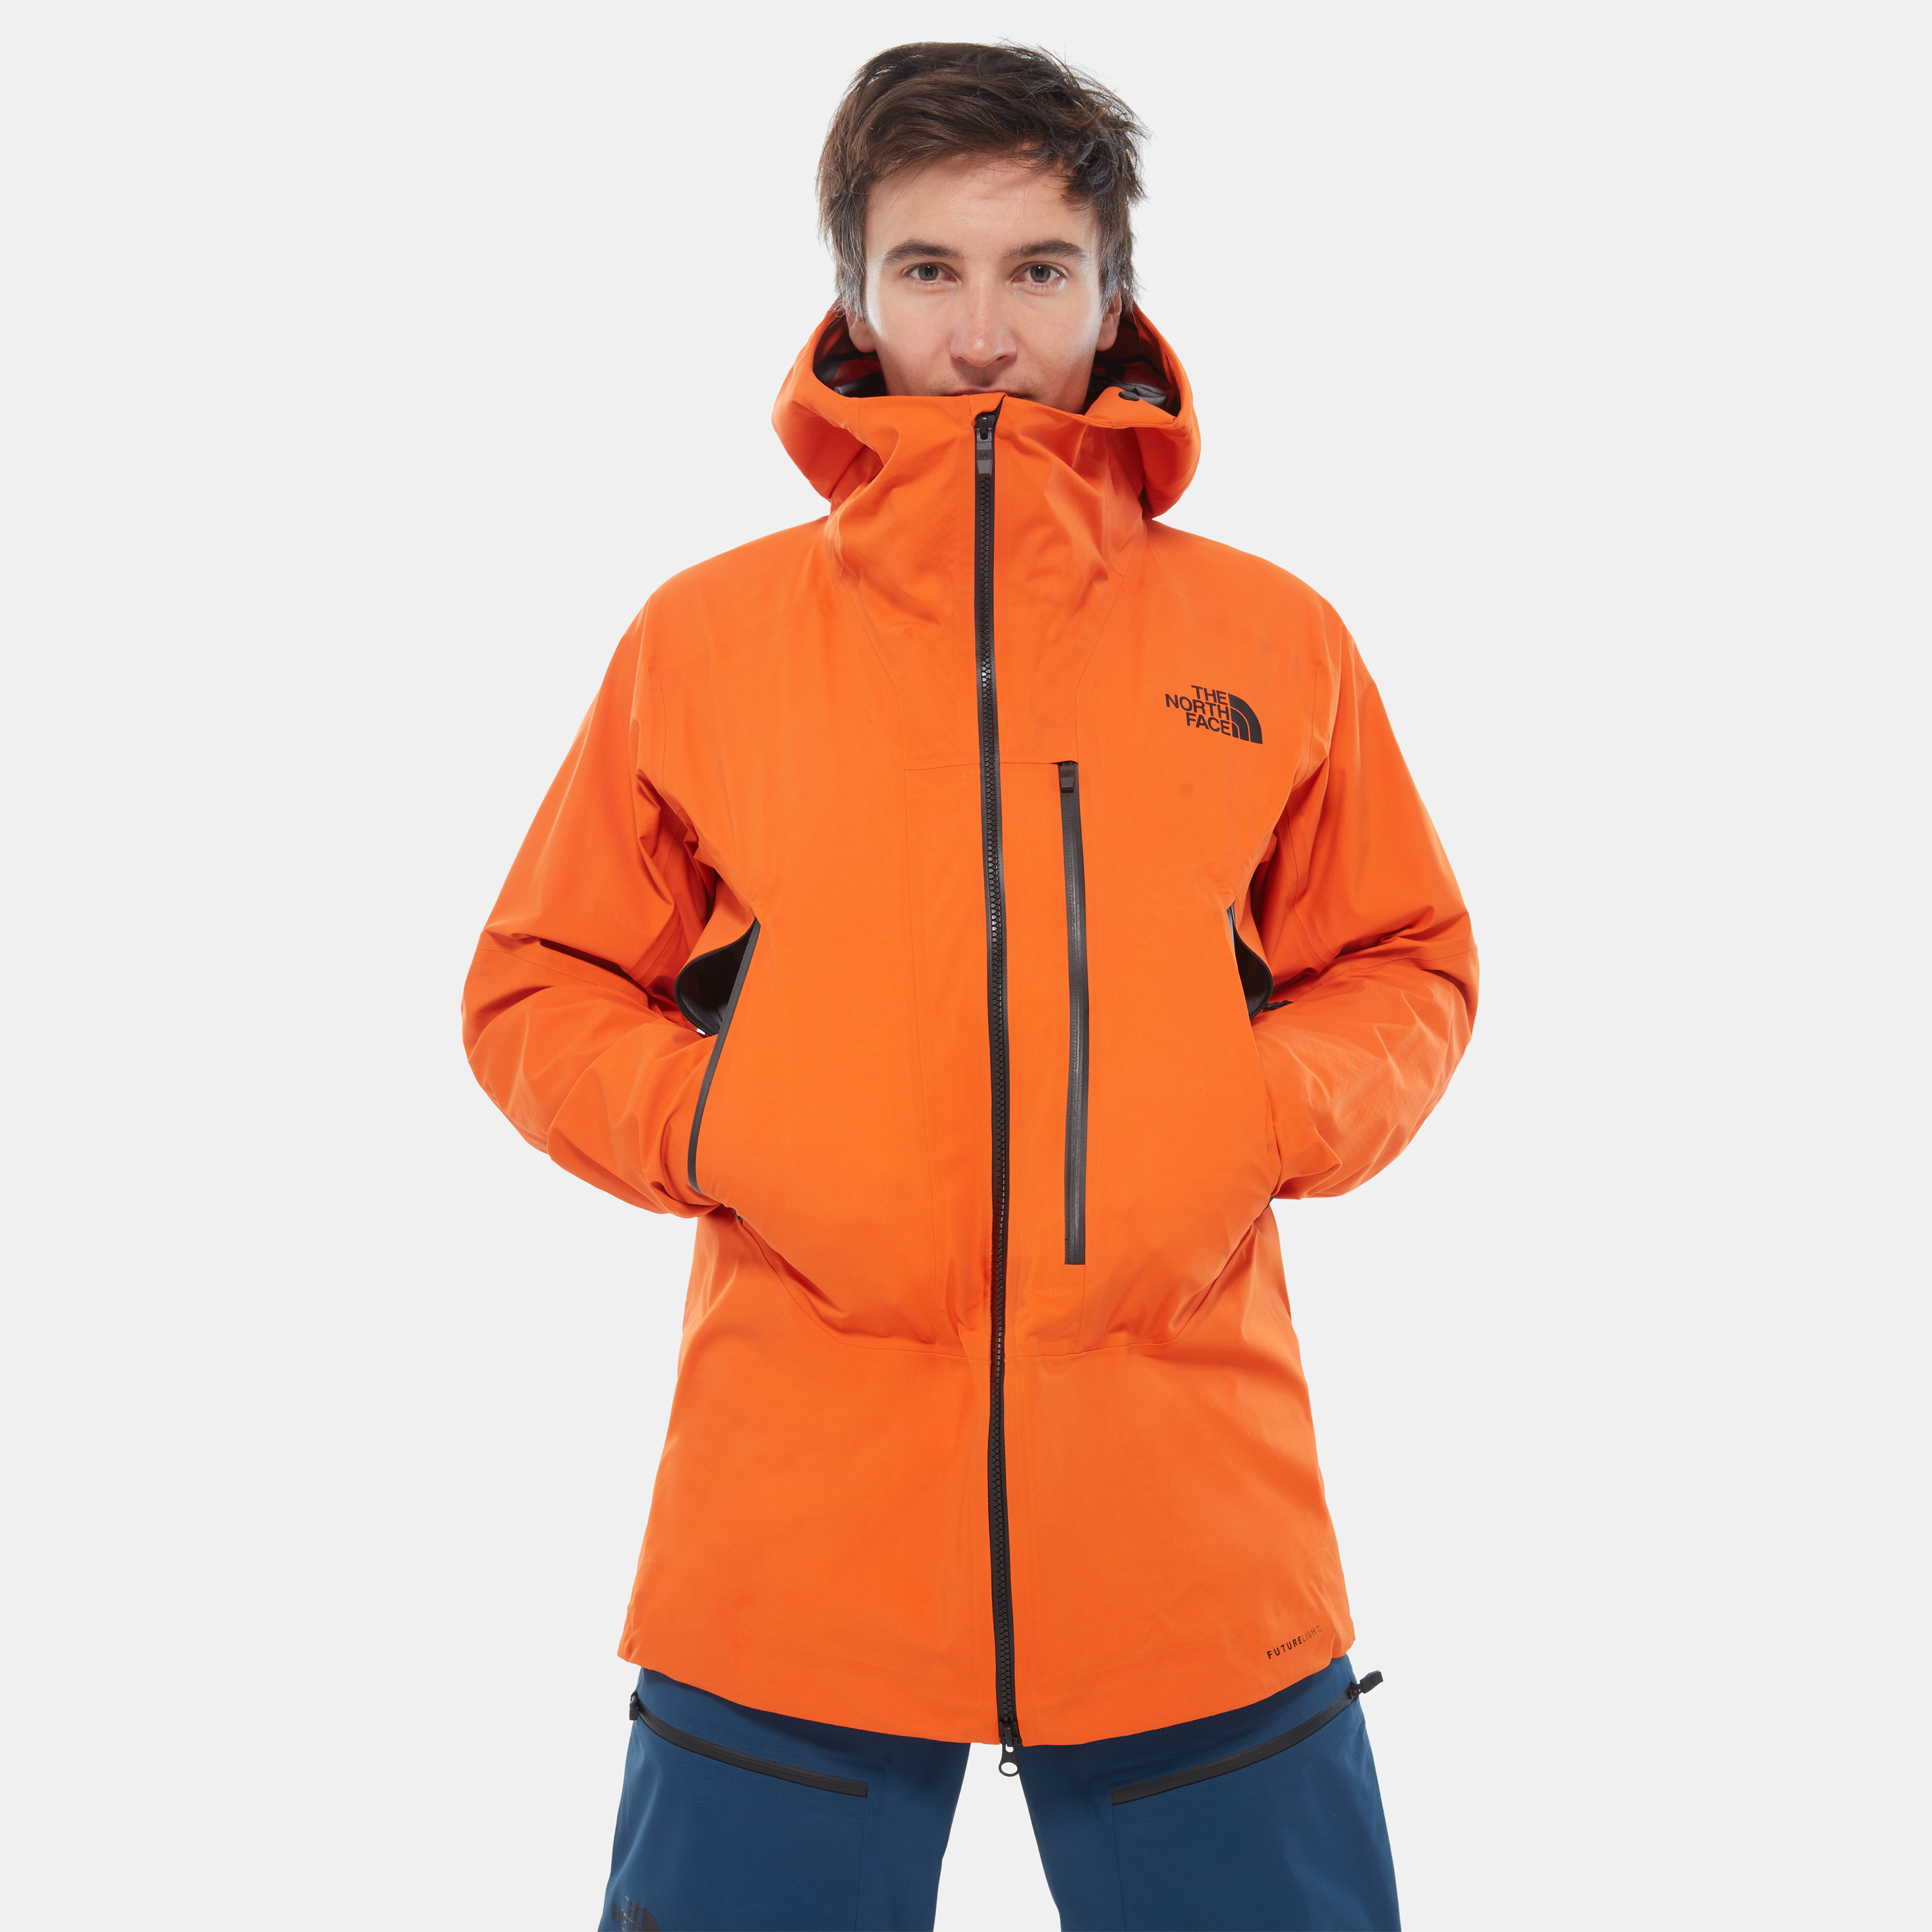 Мужская куртка Freethinker Futurelight™ (оранжевый) - изображение №1